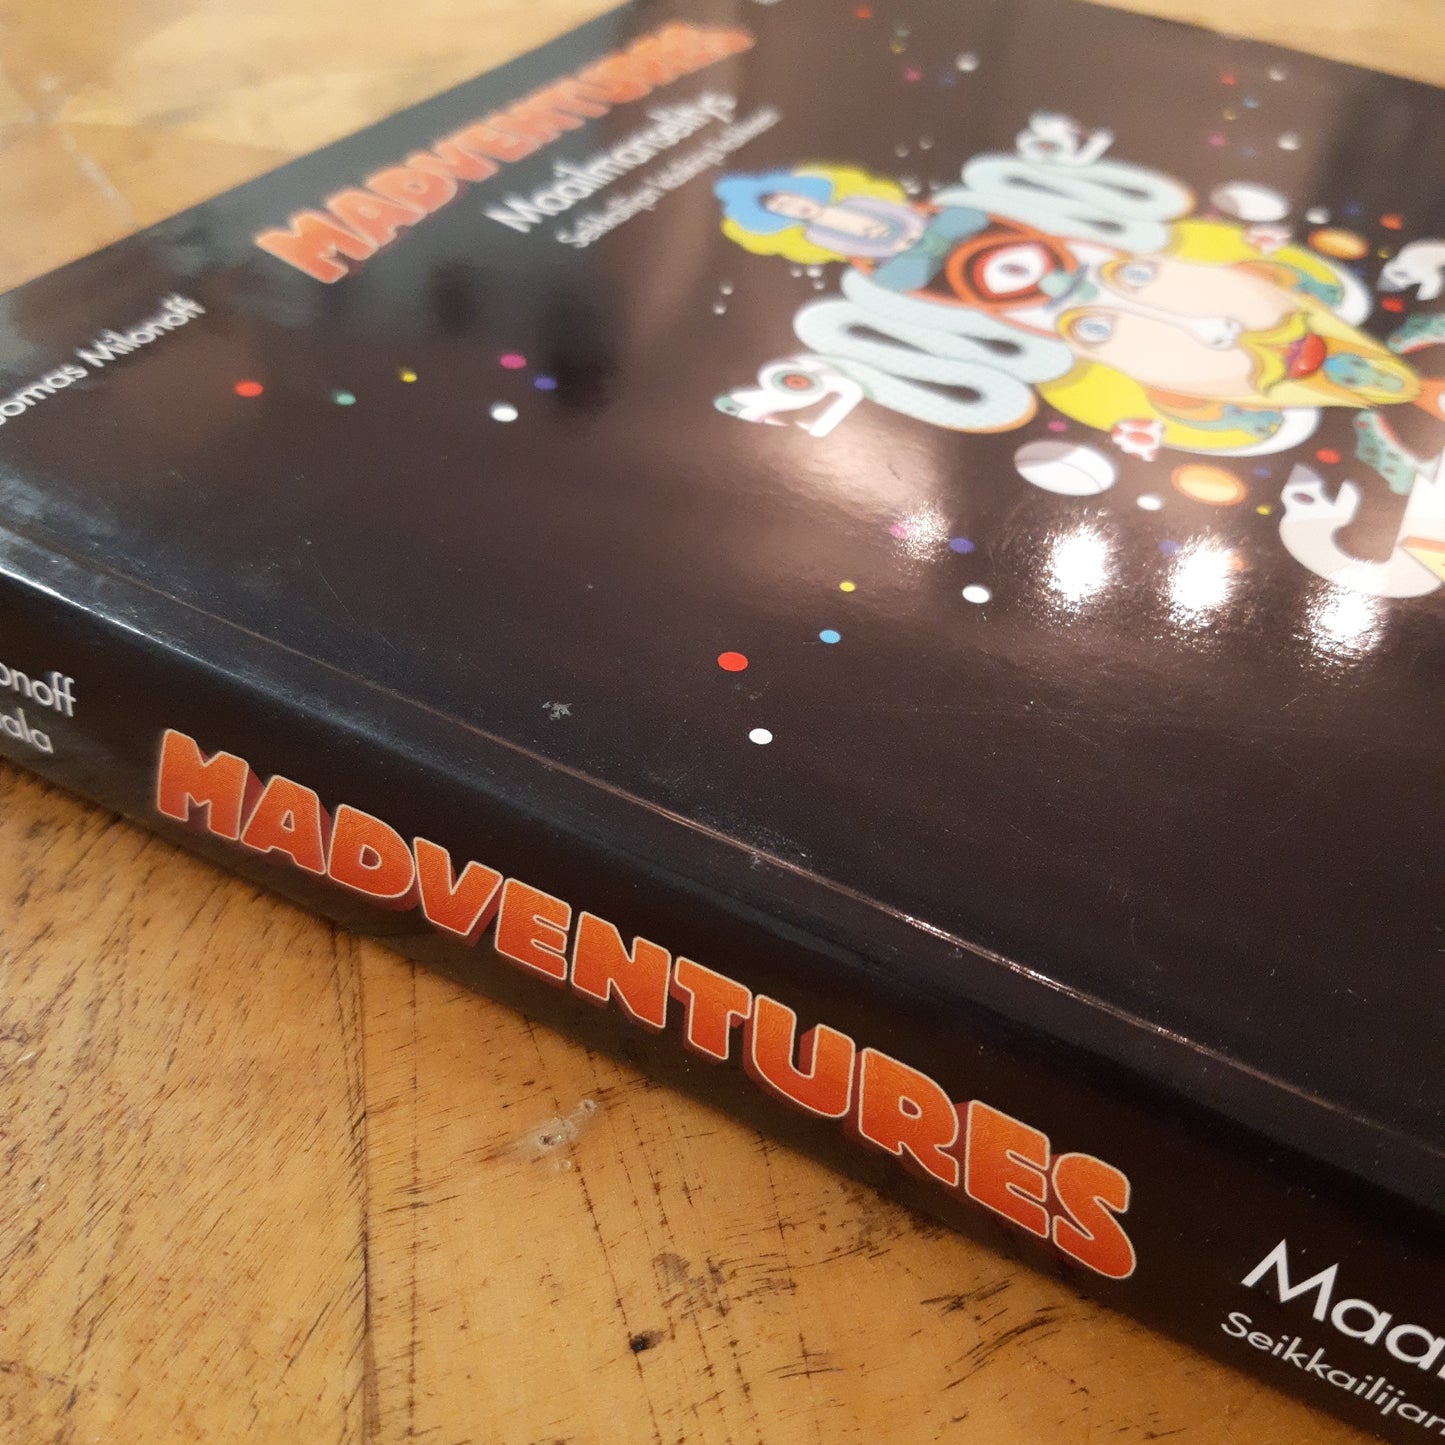 madventures - maailmanselitys - seikkailijan käsikirja kaikkeen